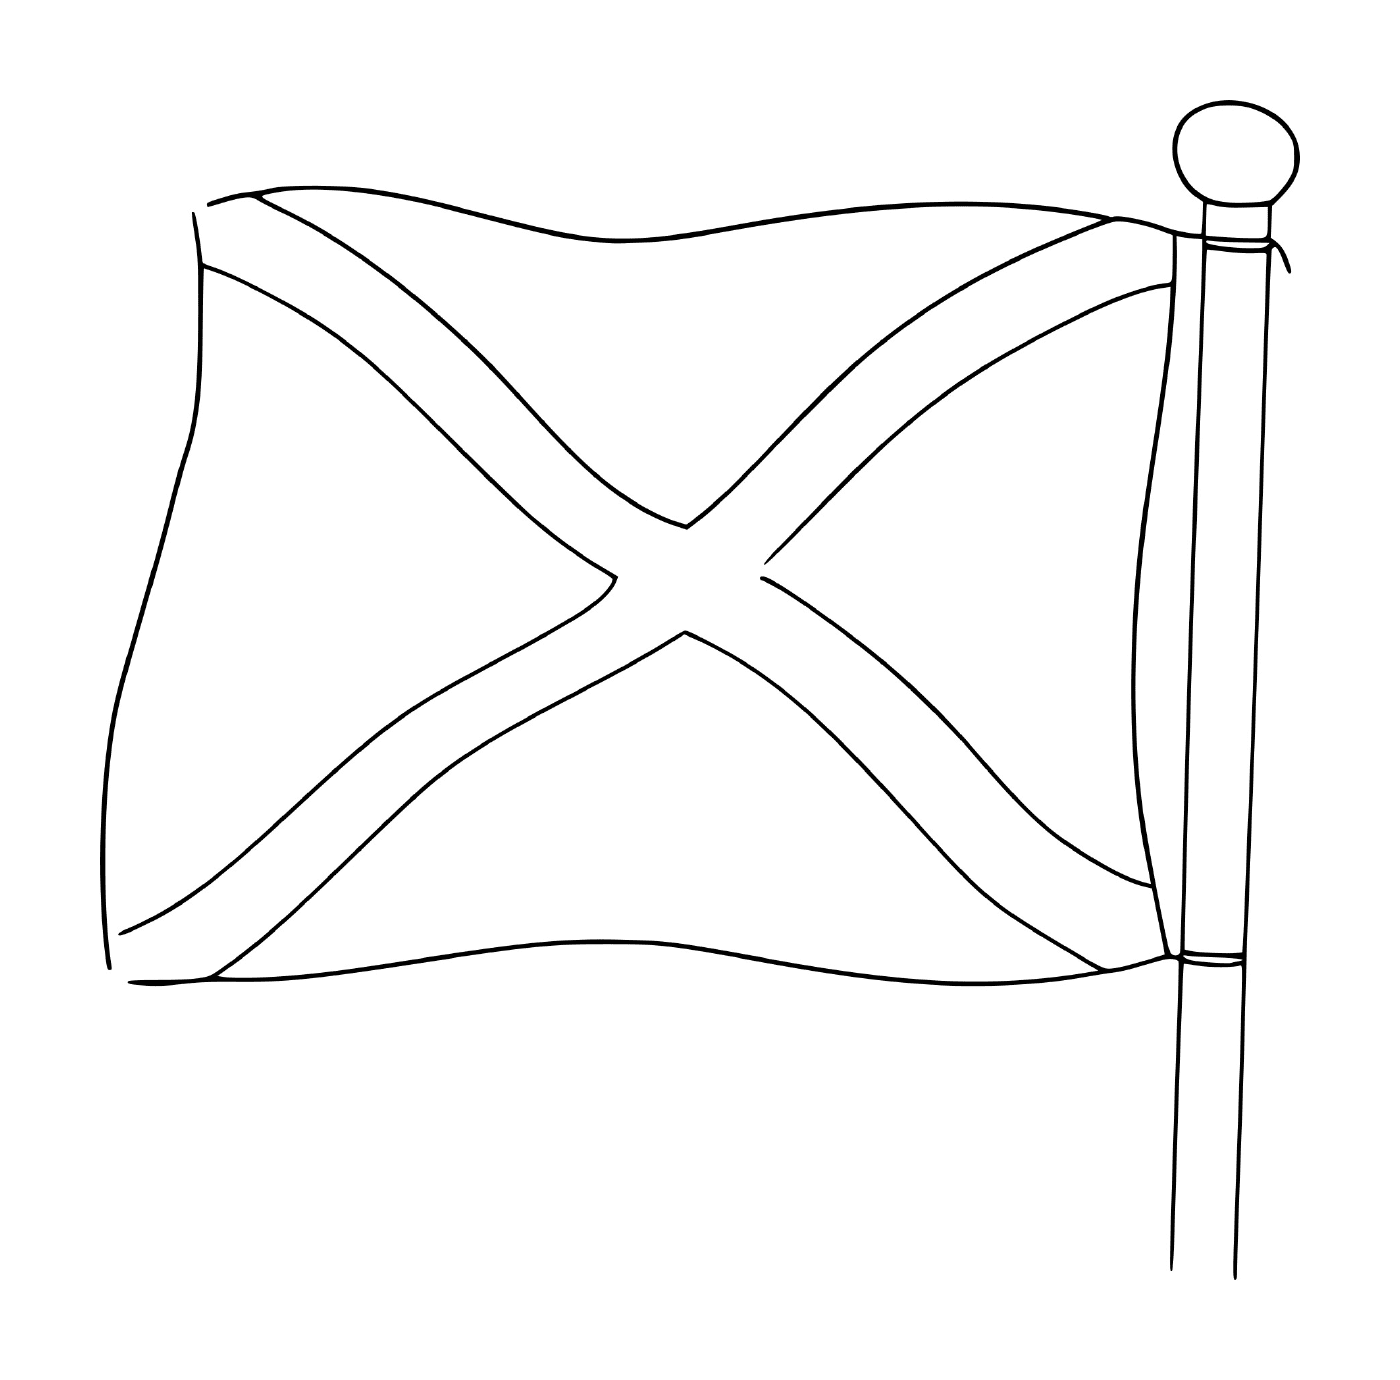  A Flag of Scotland 